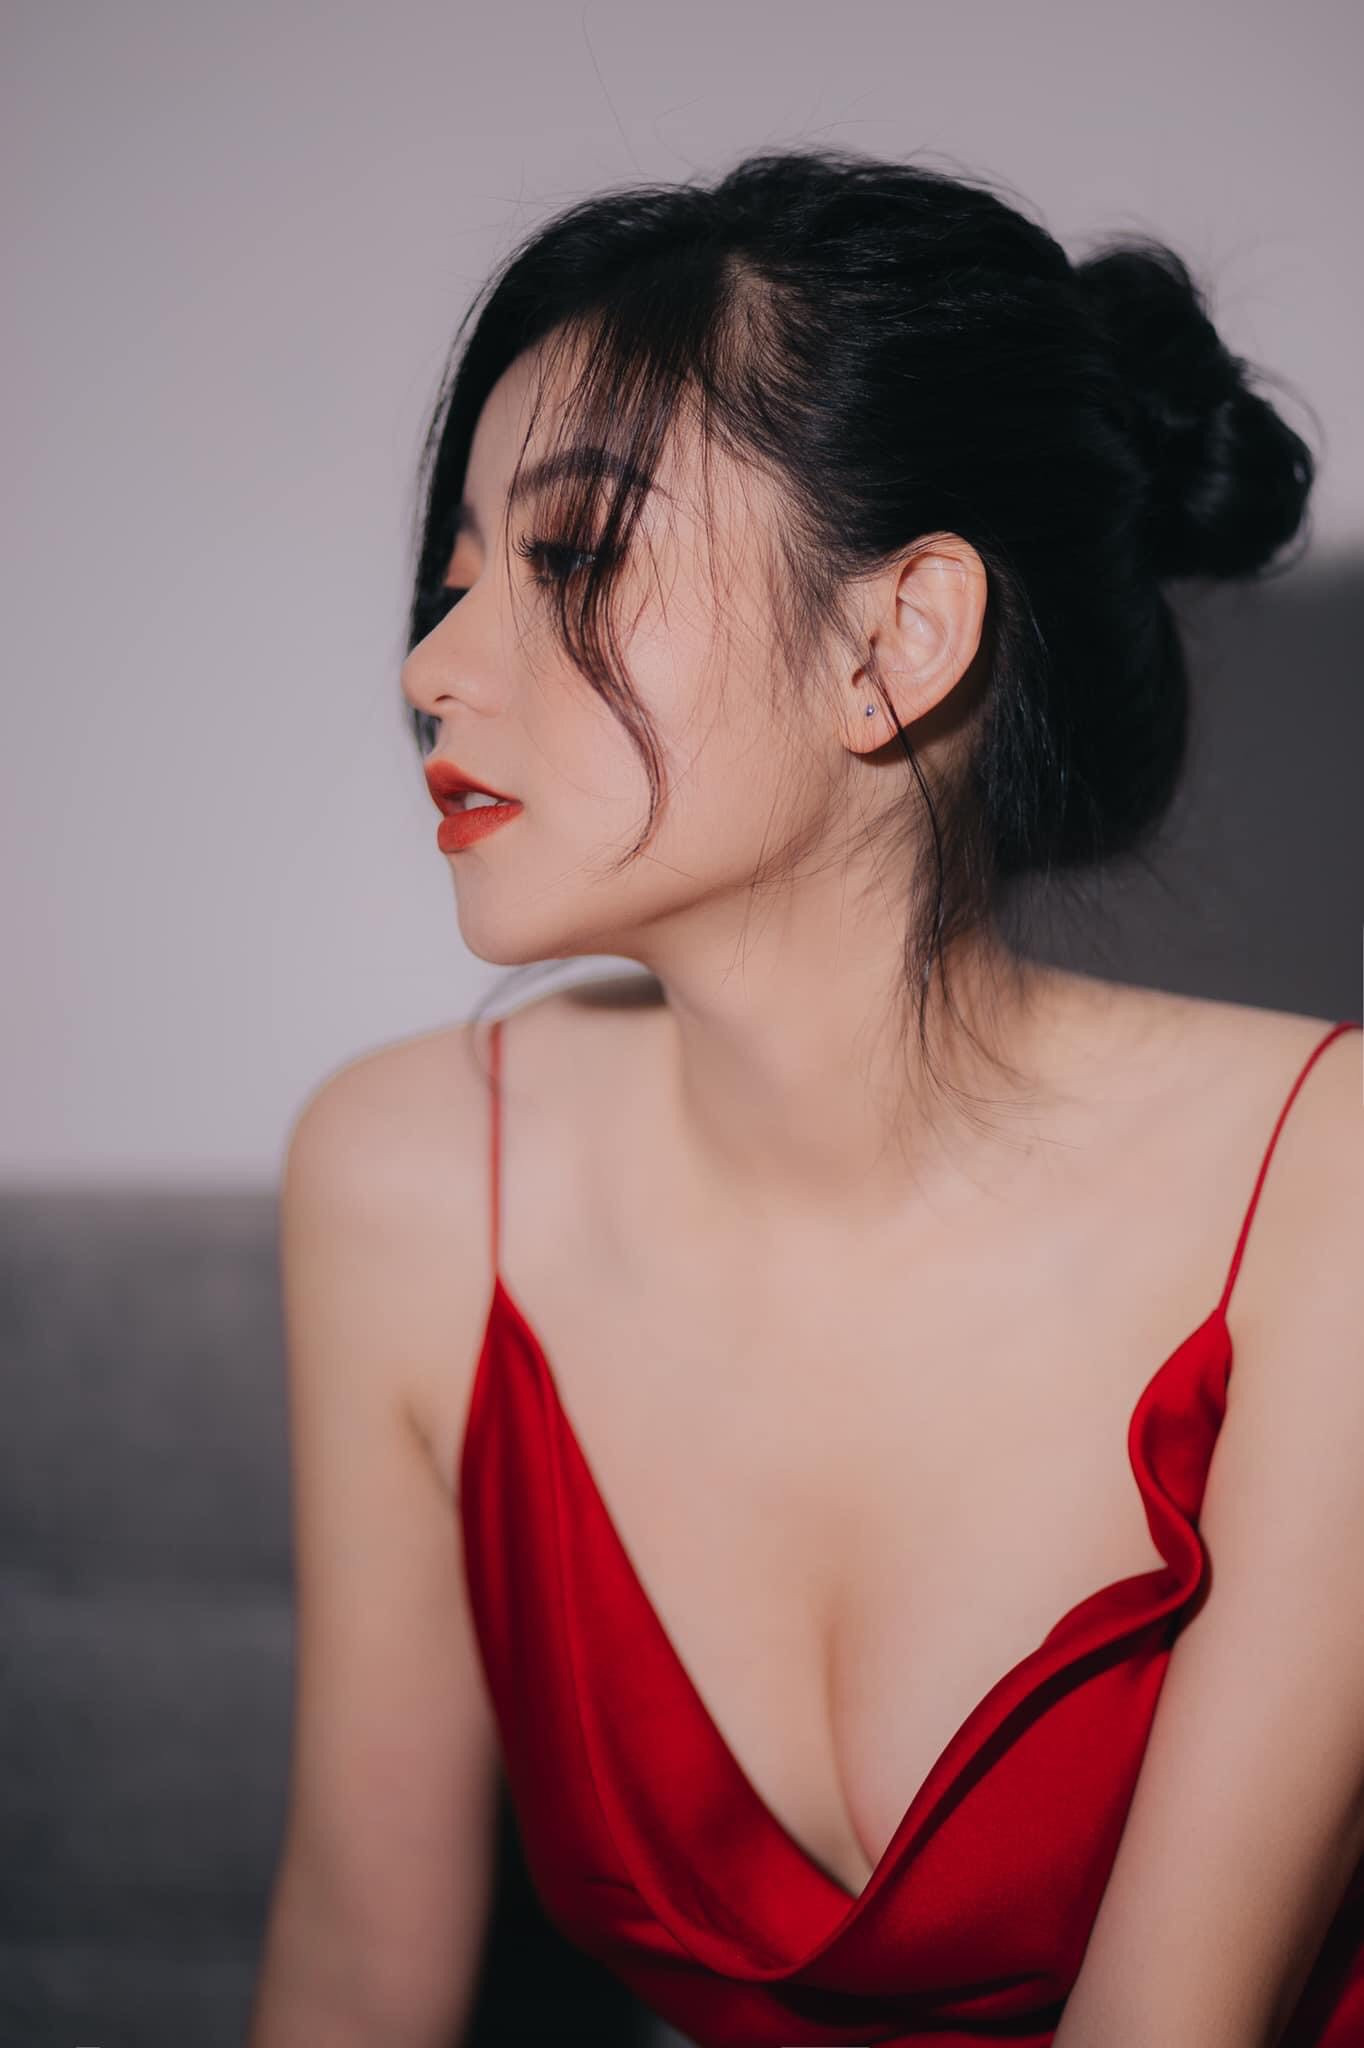 Những khuôn hình sexy mà không phản cảm của hot girl Lạng Sơn - 2